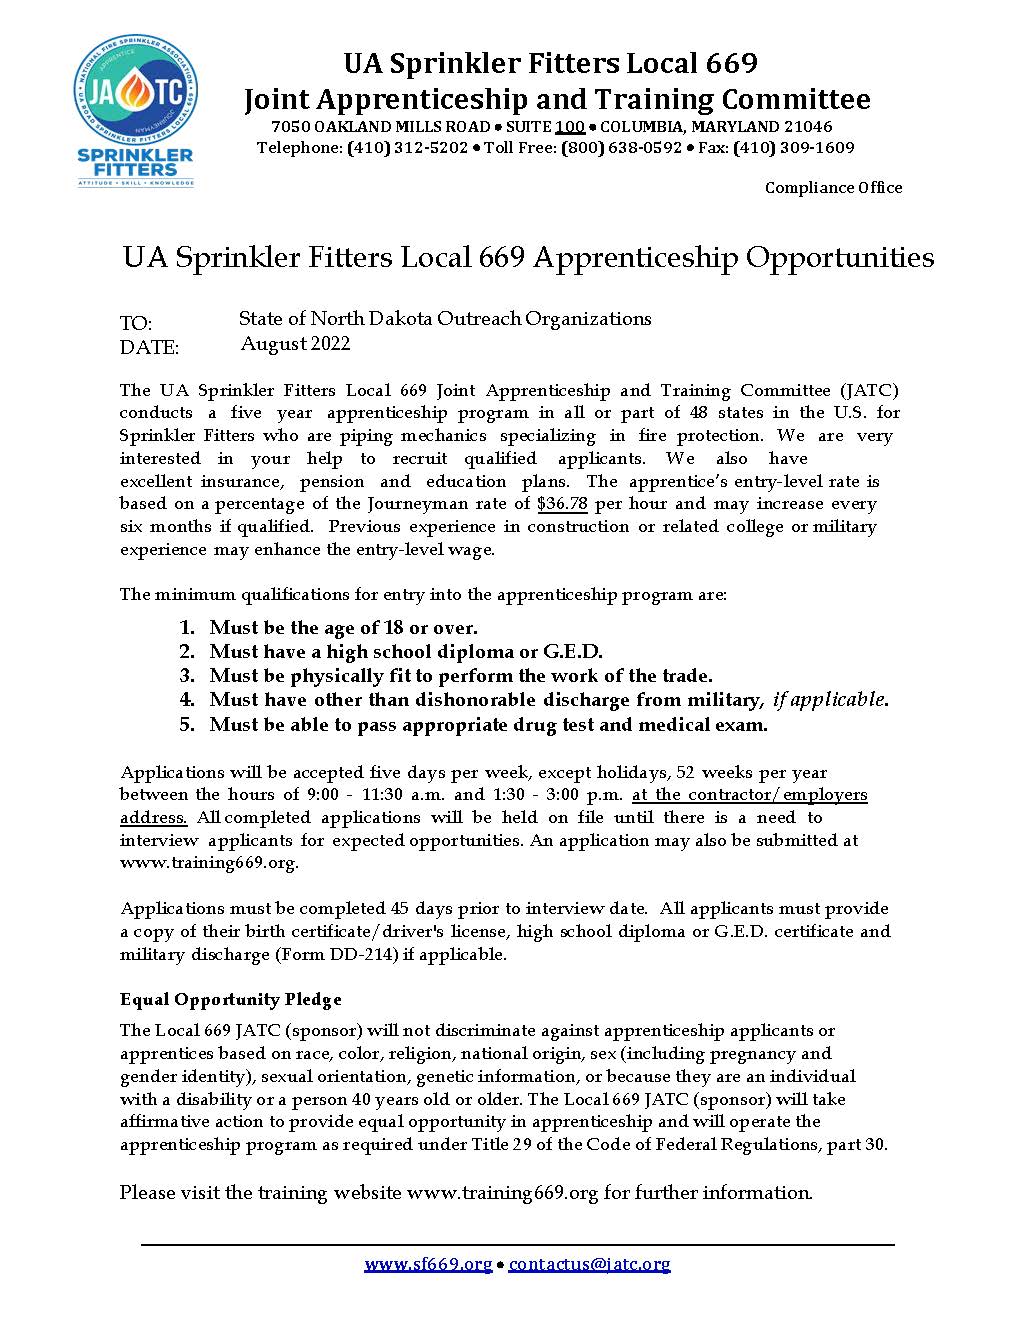 Sprinkler Fitters Apprenticeship Opportunity